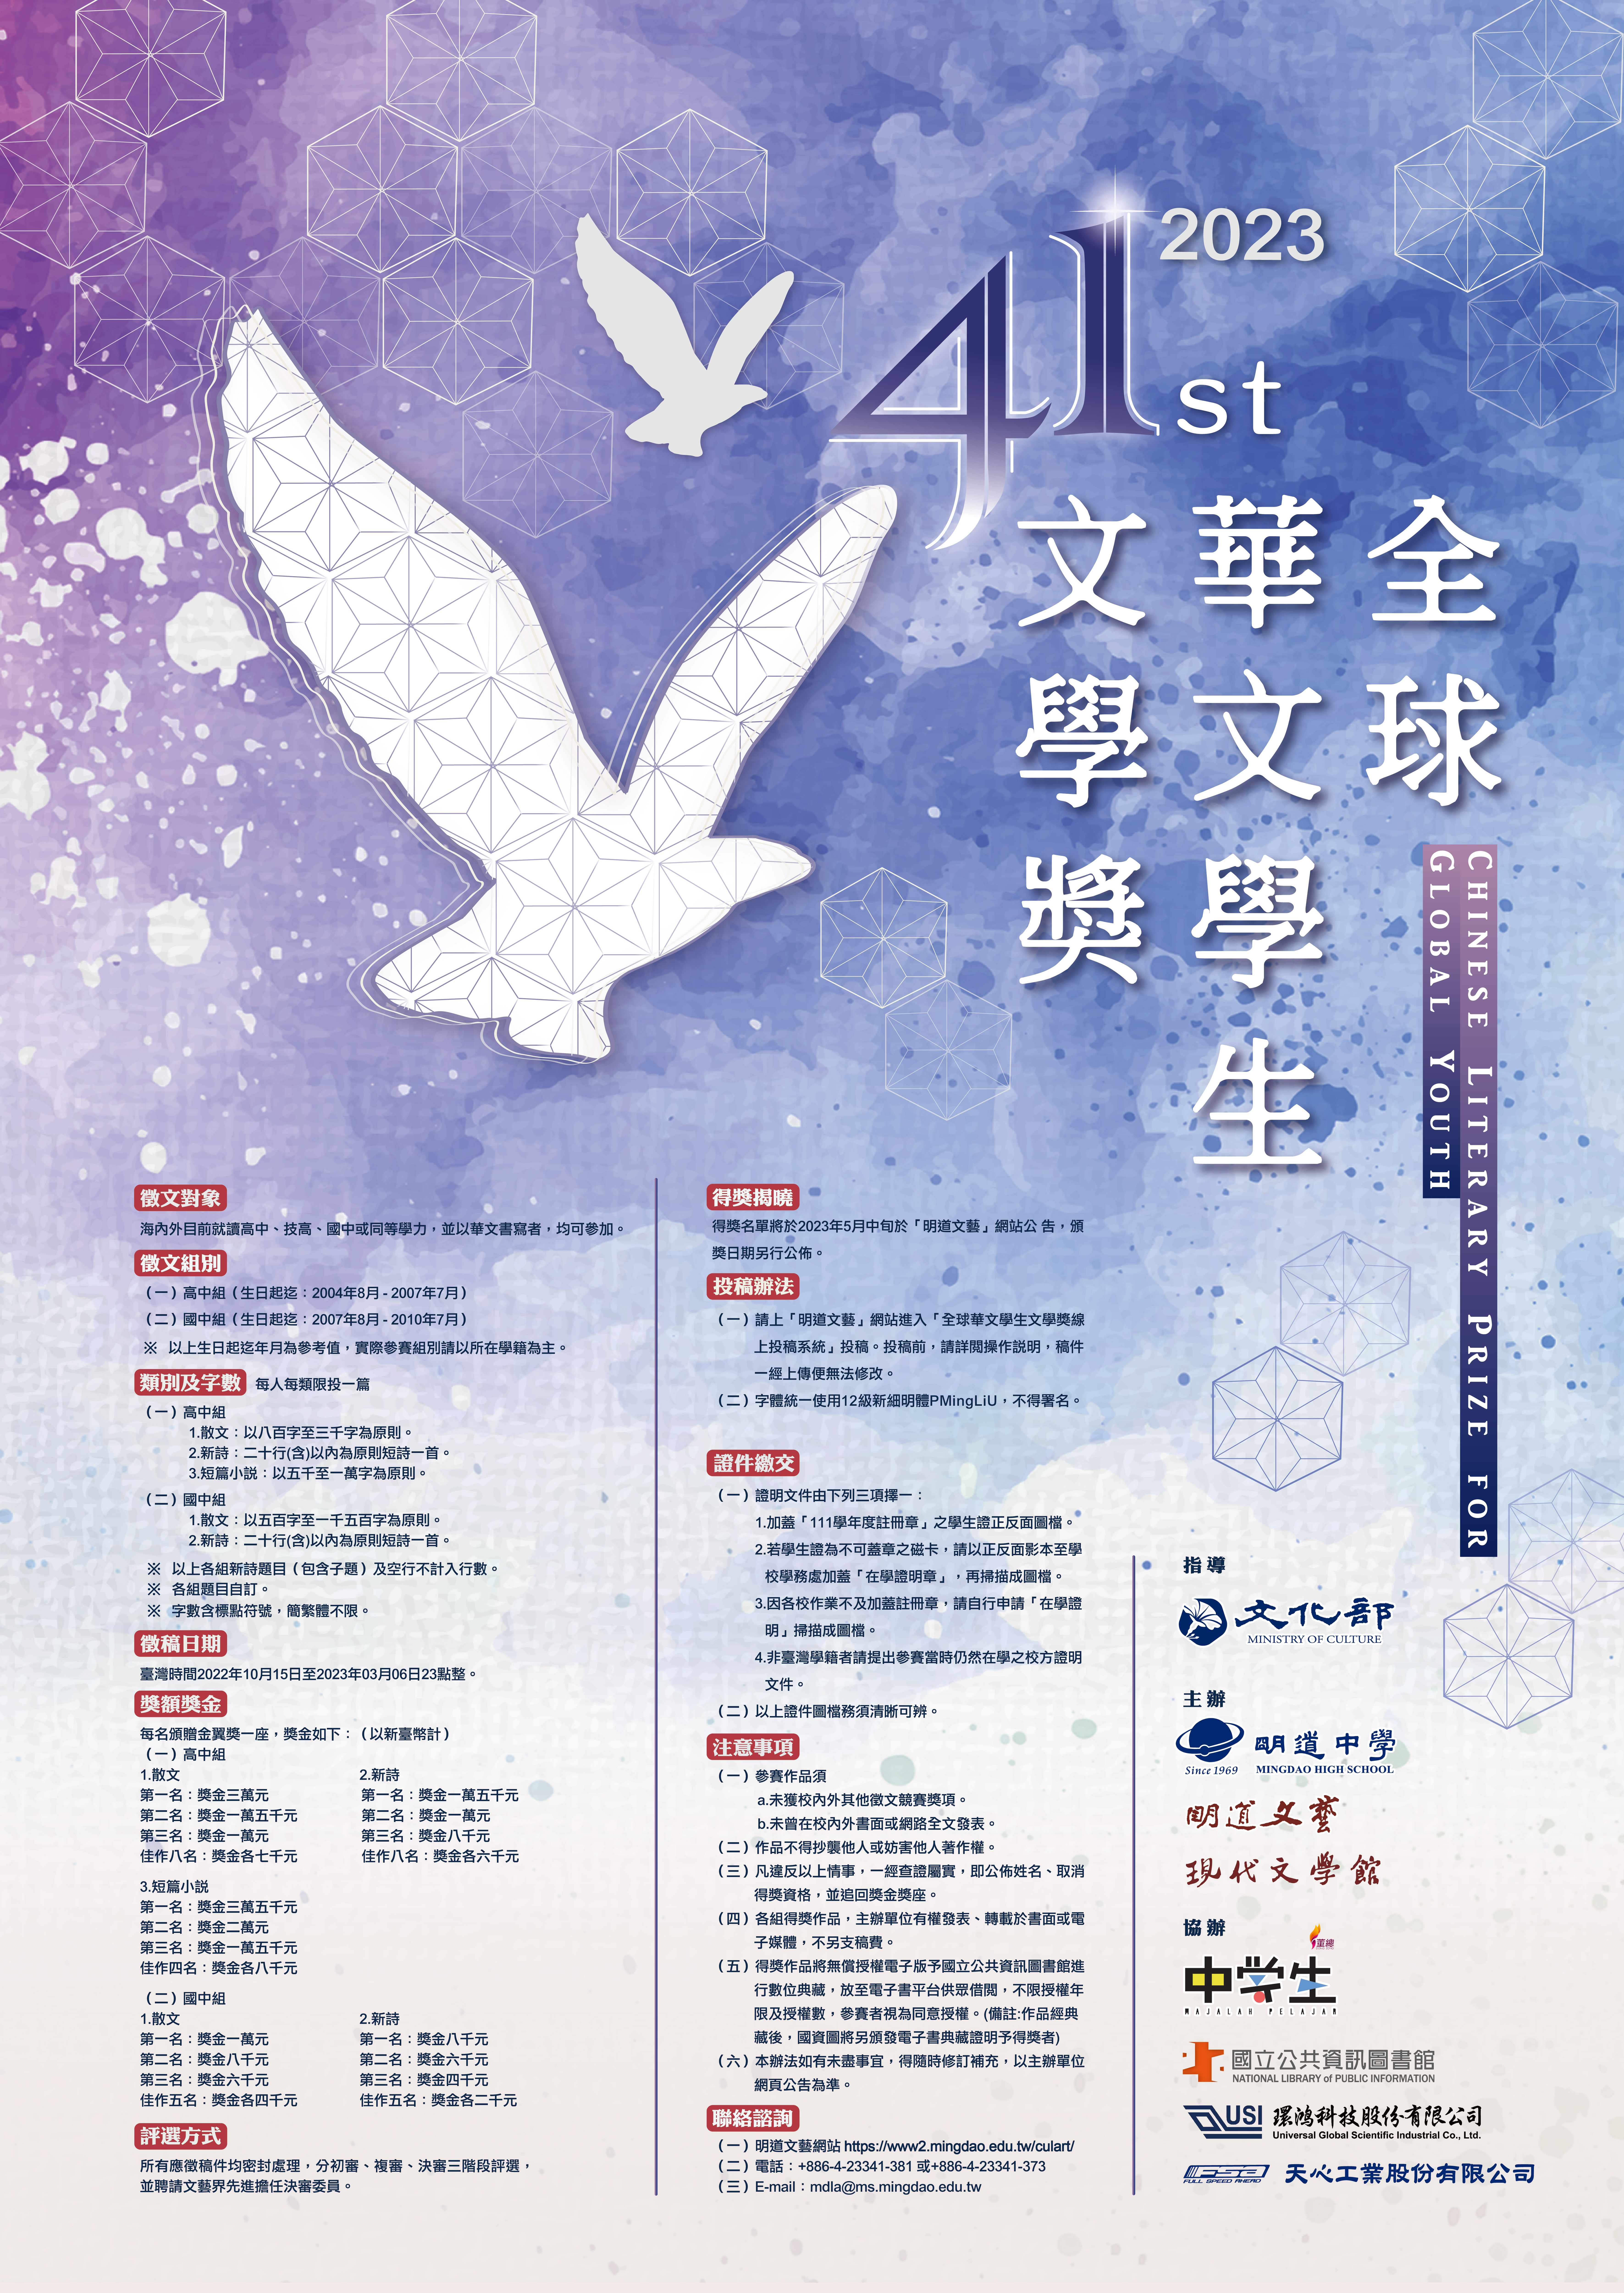 明道中學舉辦「第41屆全球華文學生文學獎」競賽，鼓勵學生踴躍投稿